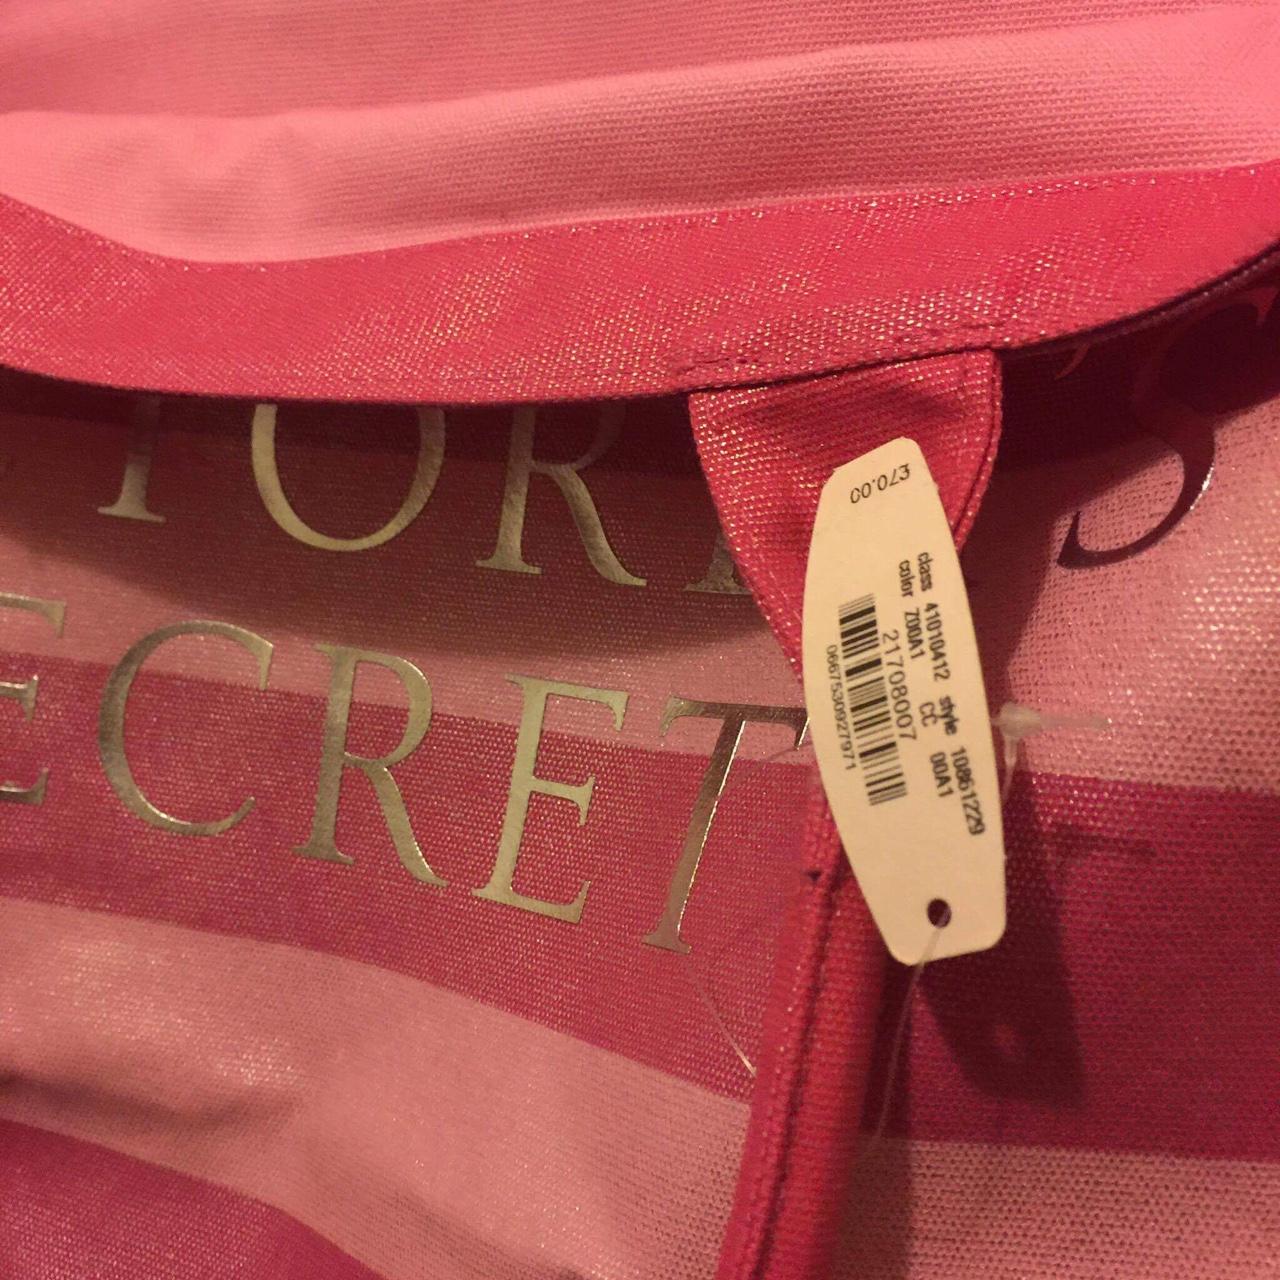 Victoria secret purse Brand new sage green/ aqua - Depop